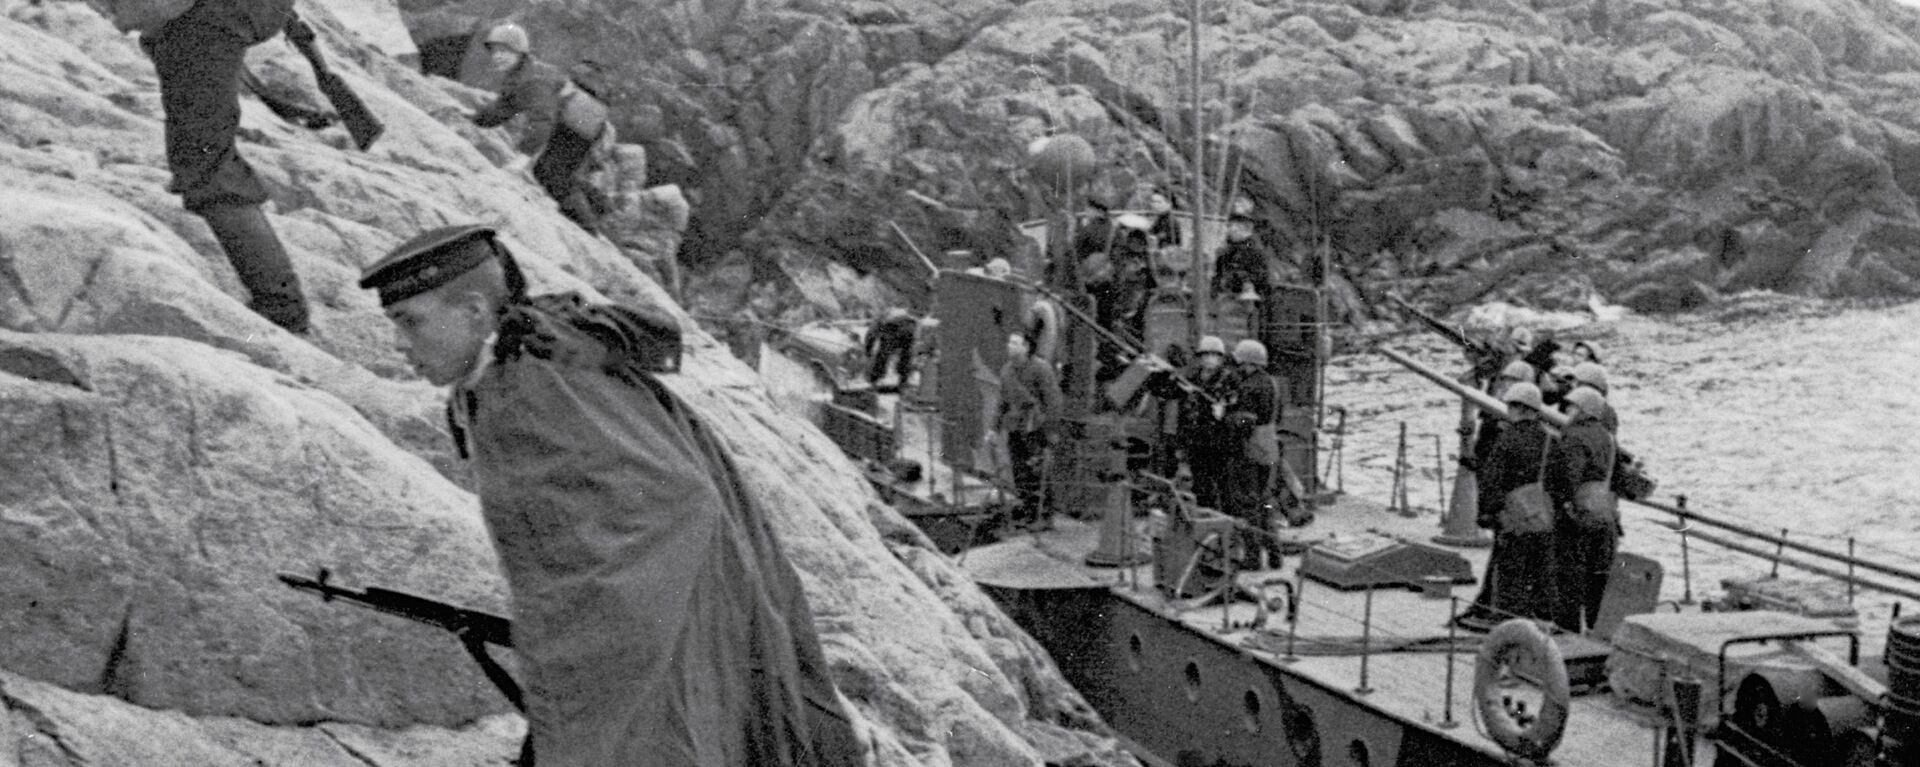 Ảnh lưu trữ. Chiến tranh thế giới thứ hai. Thủy quân lục chiến Hạm đội Biển Bắc đổ bộ lên bờ biển đang bị kẻ thù chiếm đóng. - Sputnik Việt Nam, 1920, 11.11.2021